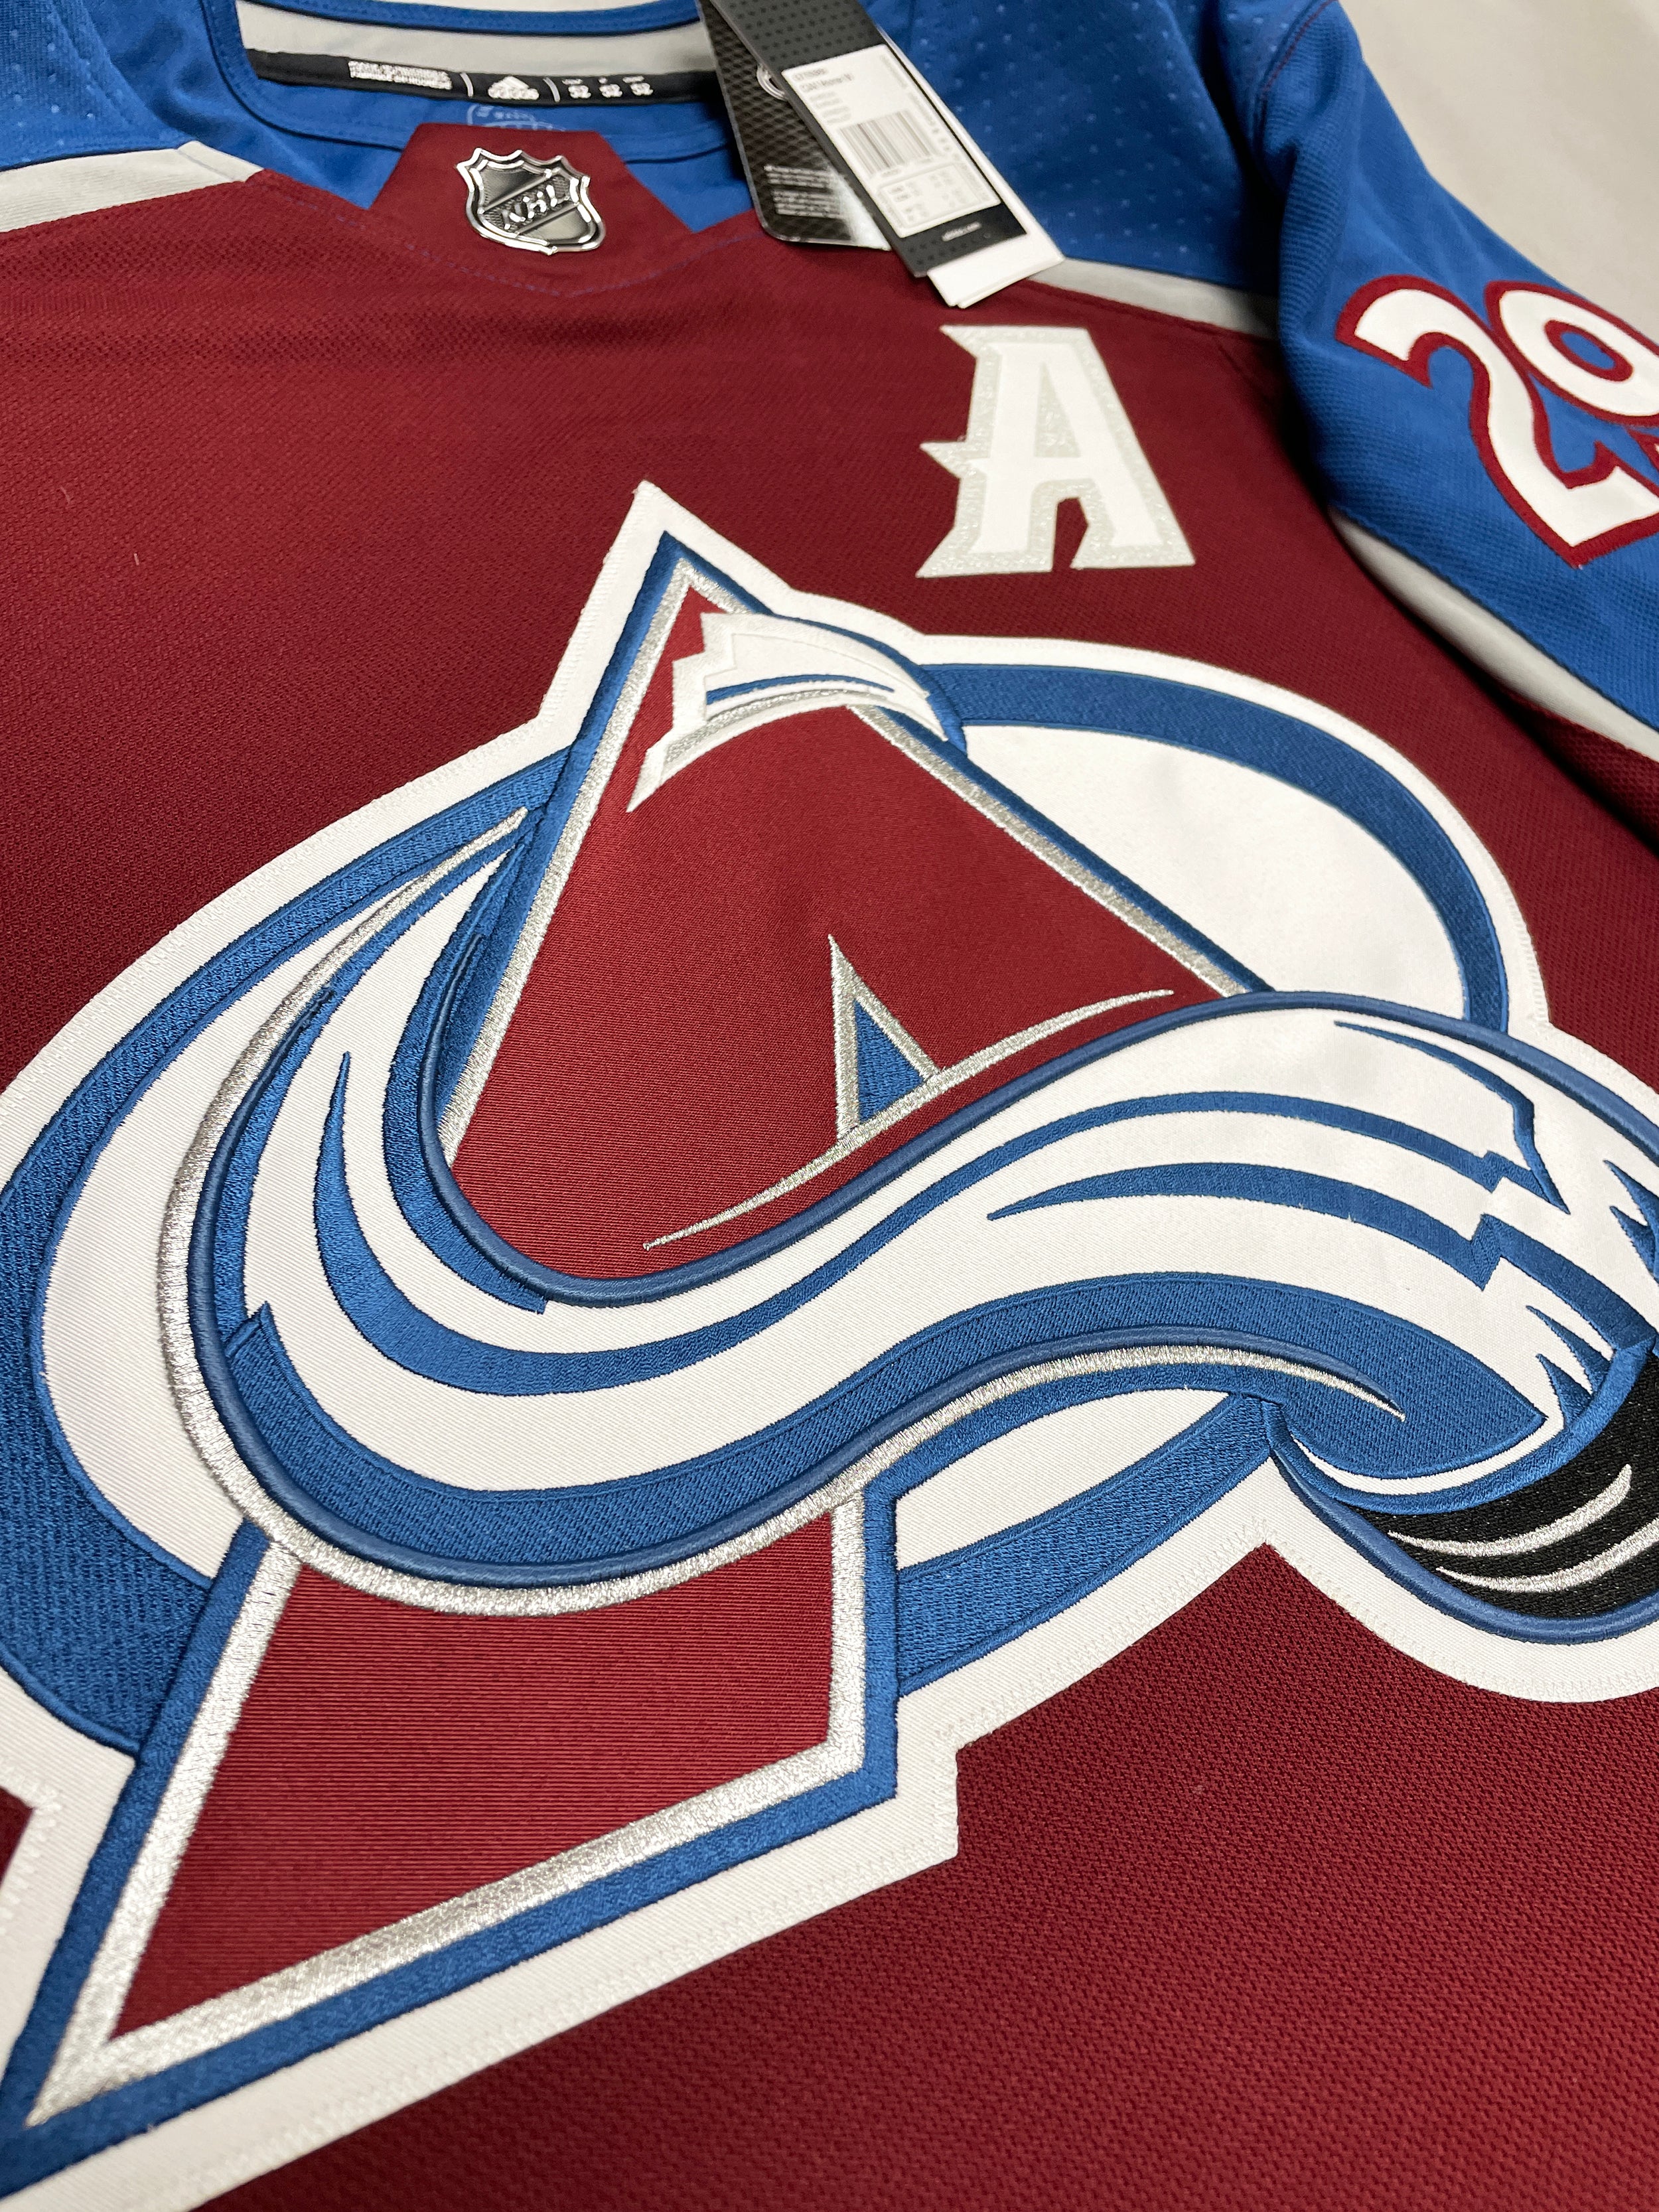 Colorado Avalanche Jerseys, Avalanche Hockey Jerseys, Authentic Avalanche  Jersey, Colorado Avalanche Primegreen Jerseys